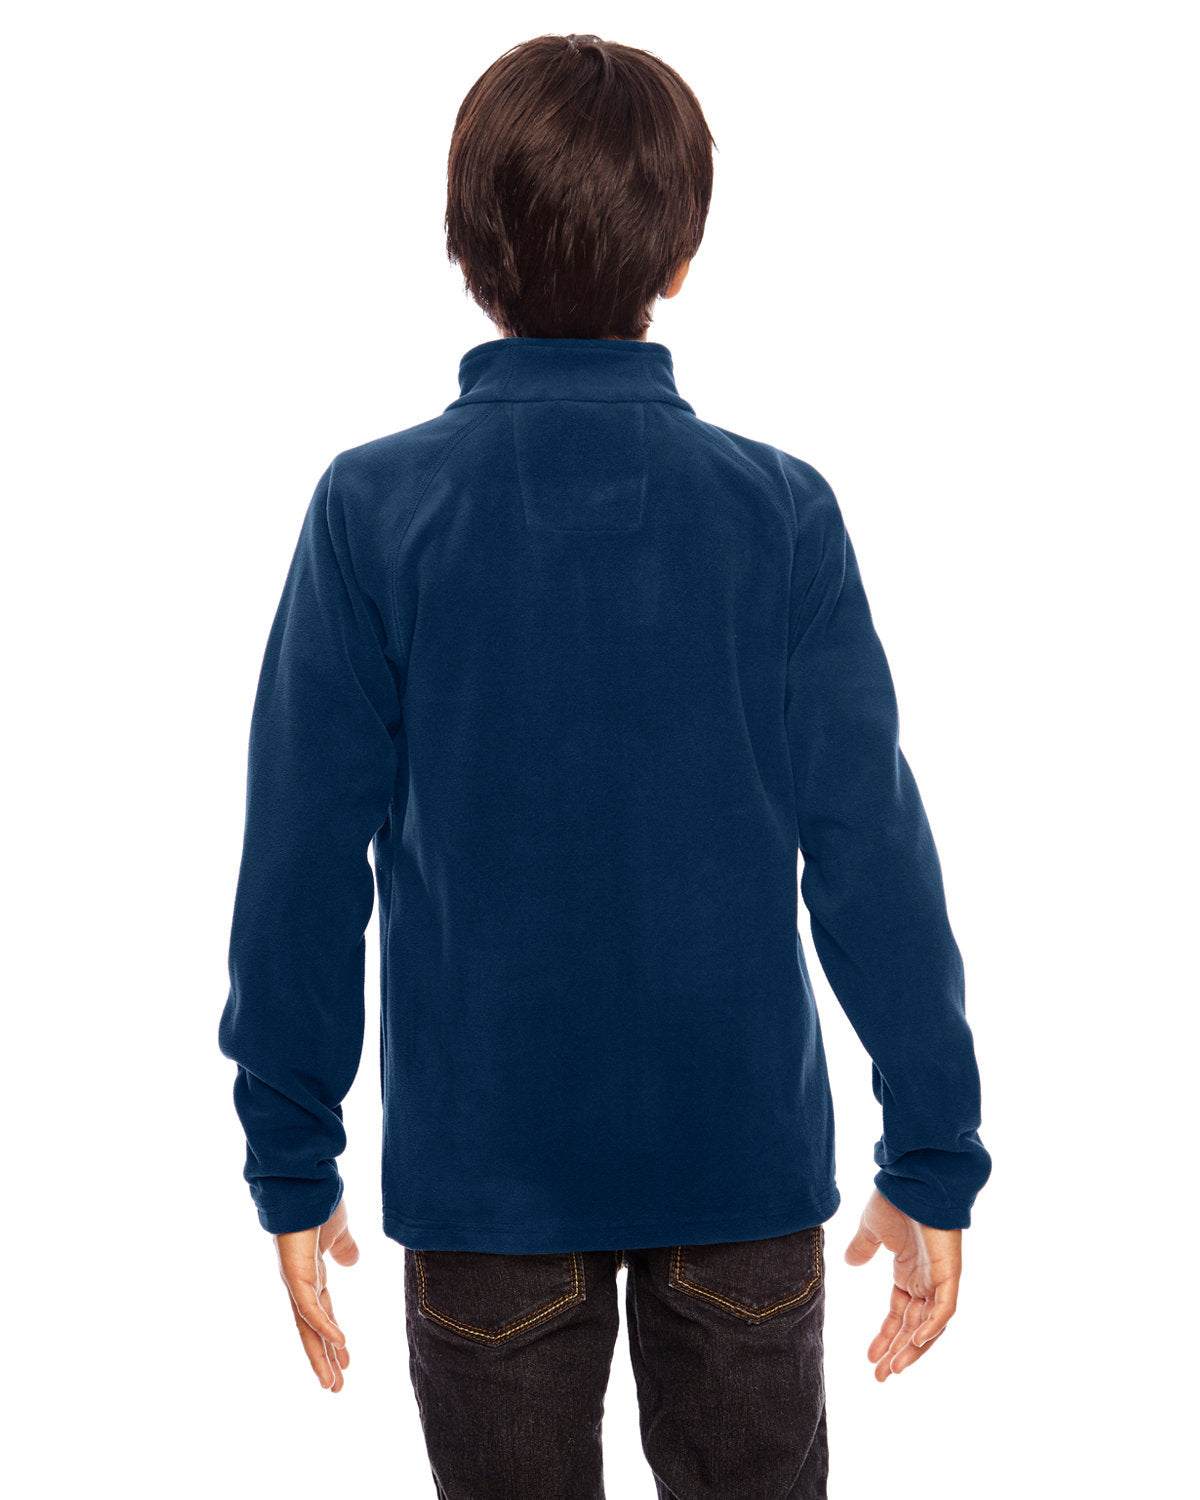 Fleece Full Zip Jacket Youth